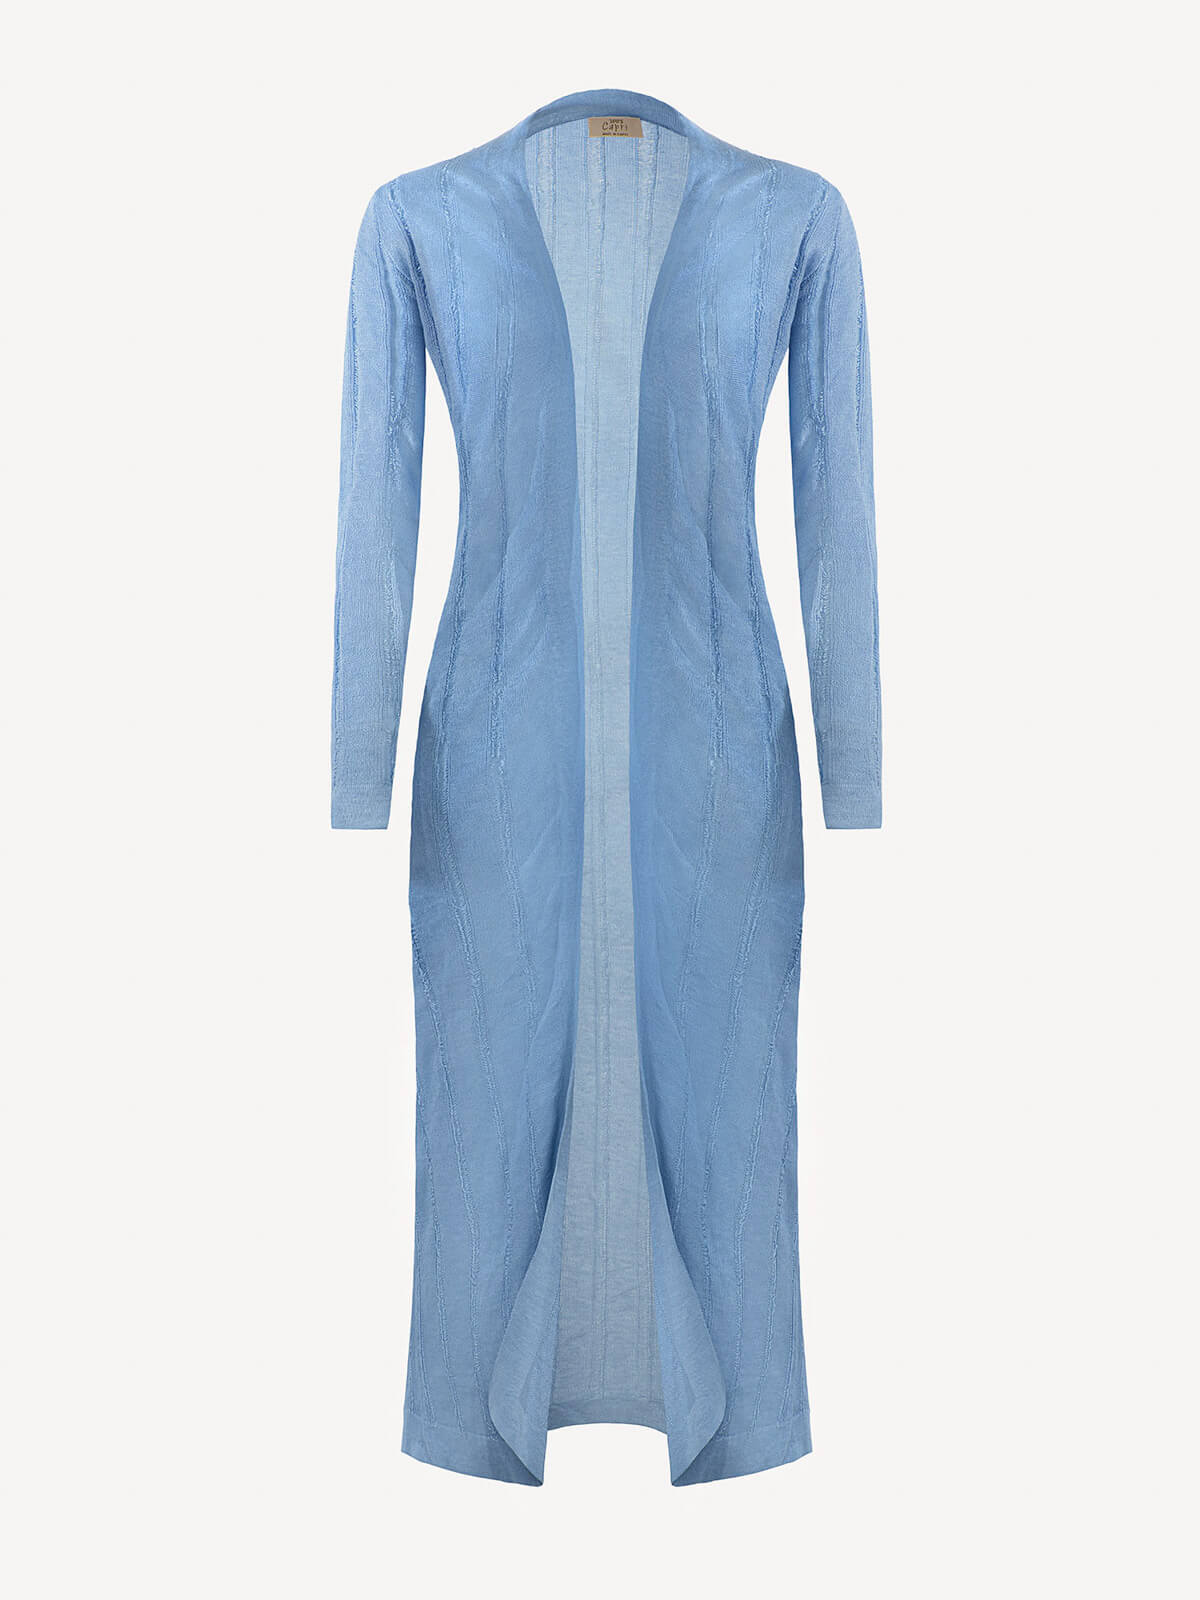 Cappotto Lungo Sfrangiato 100% Capri jeans linen dress front